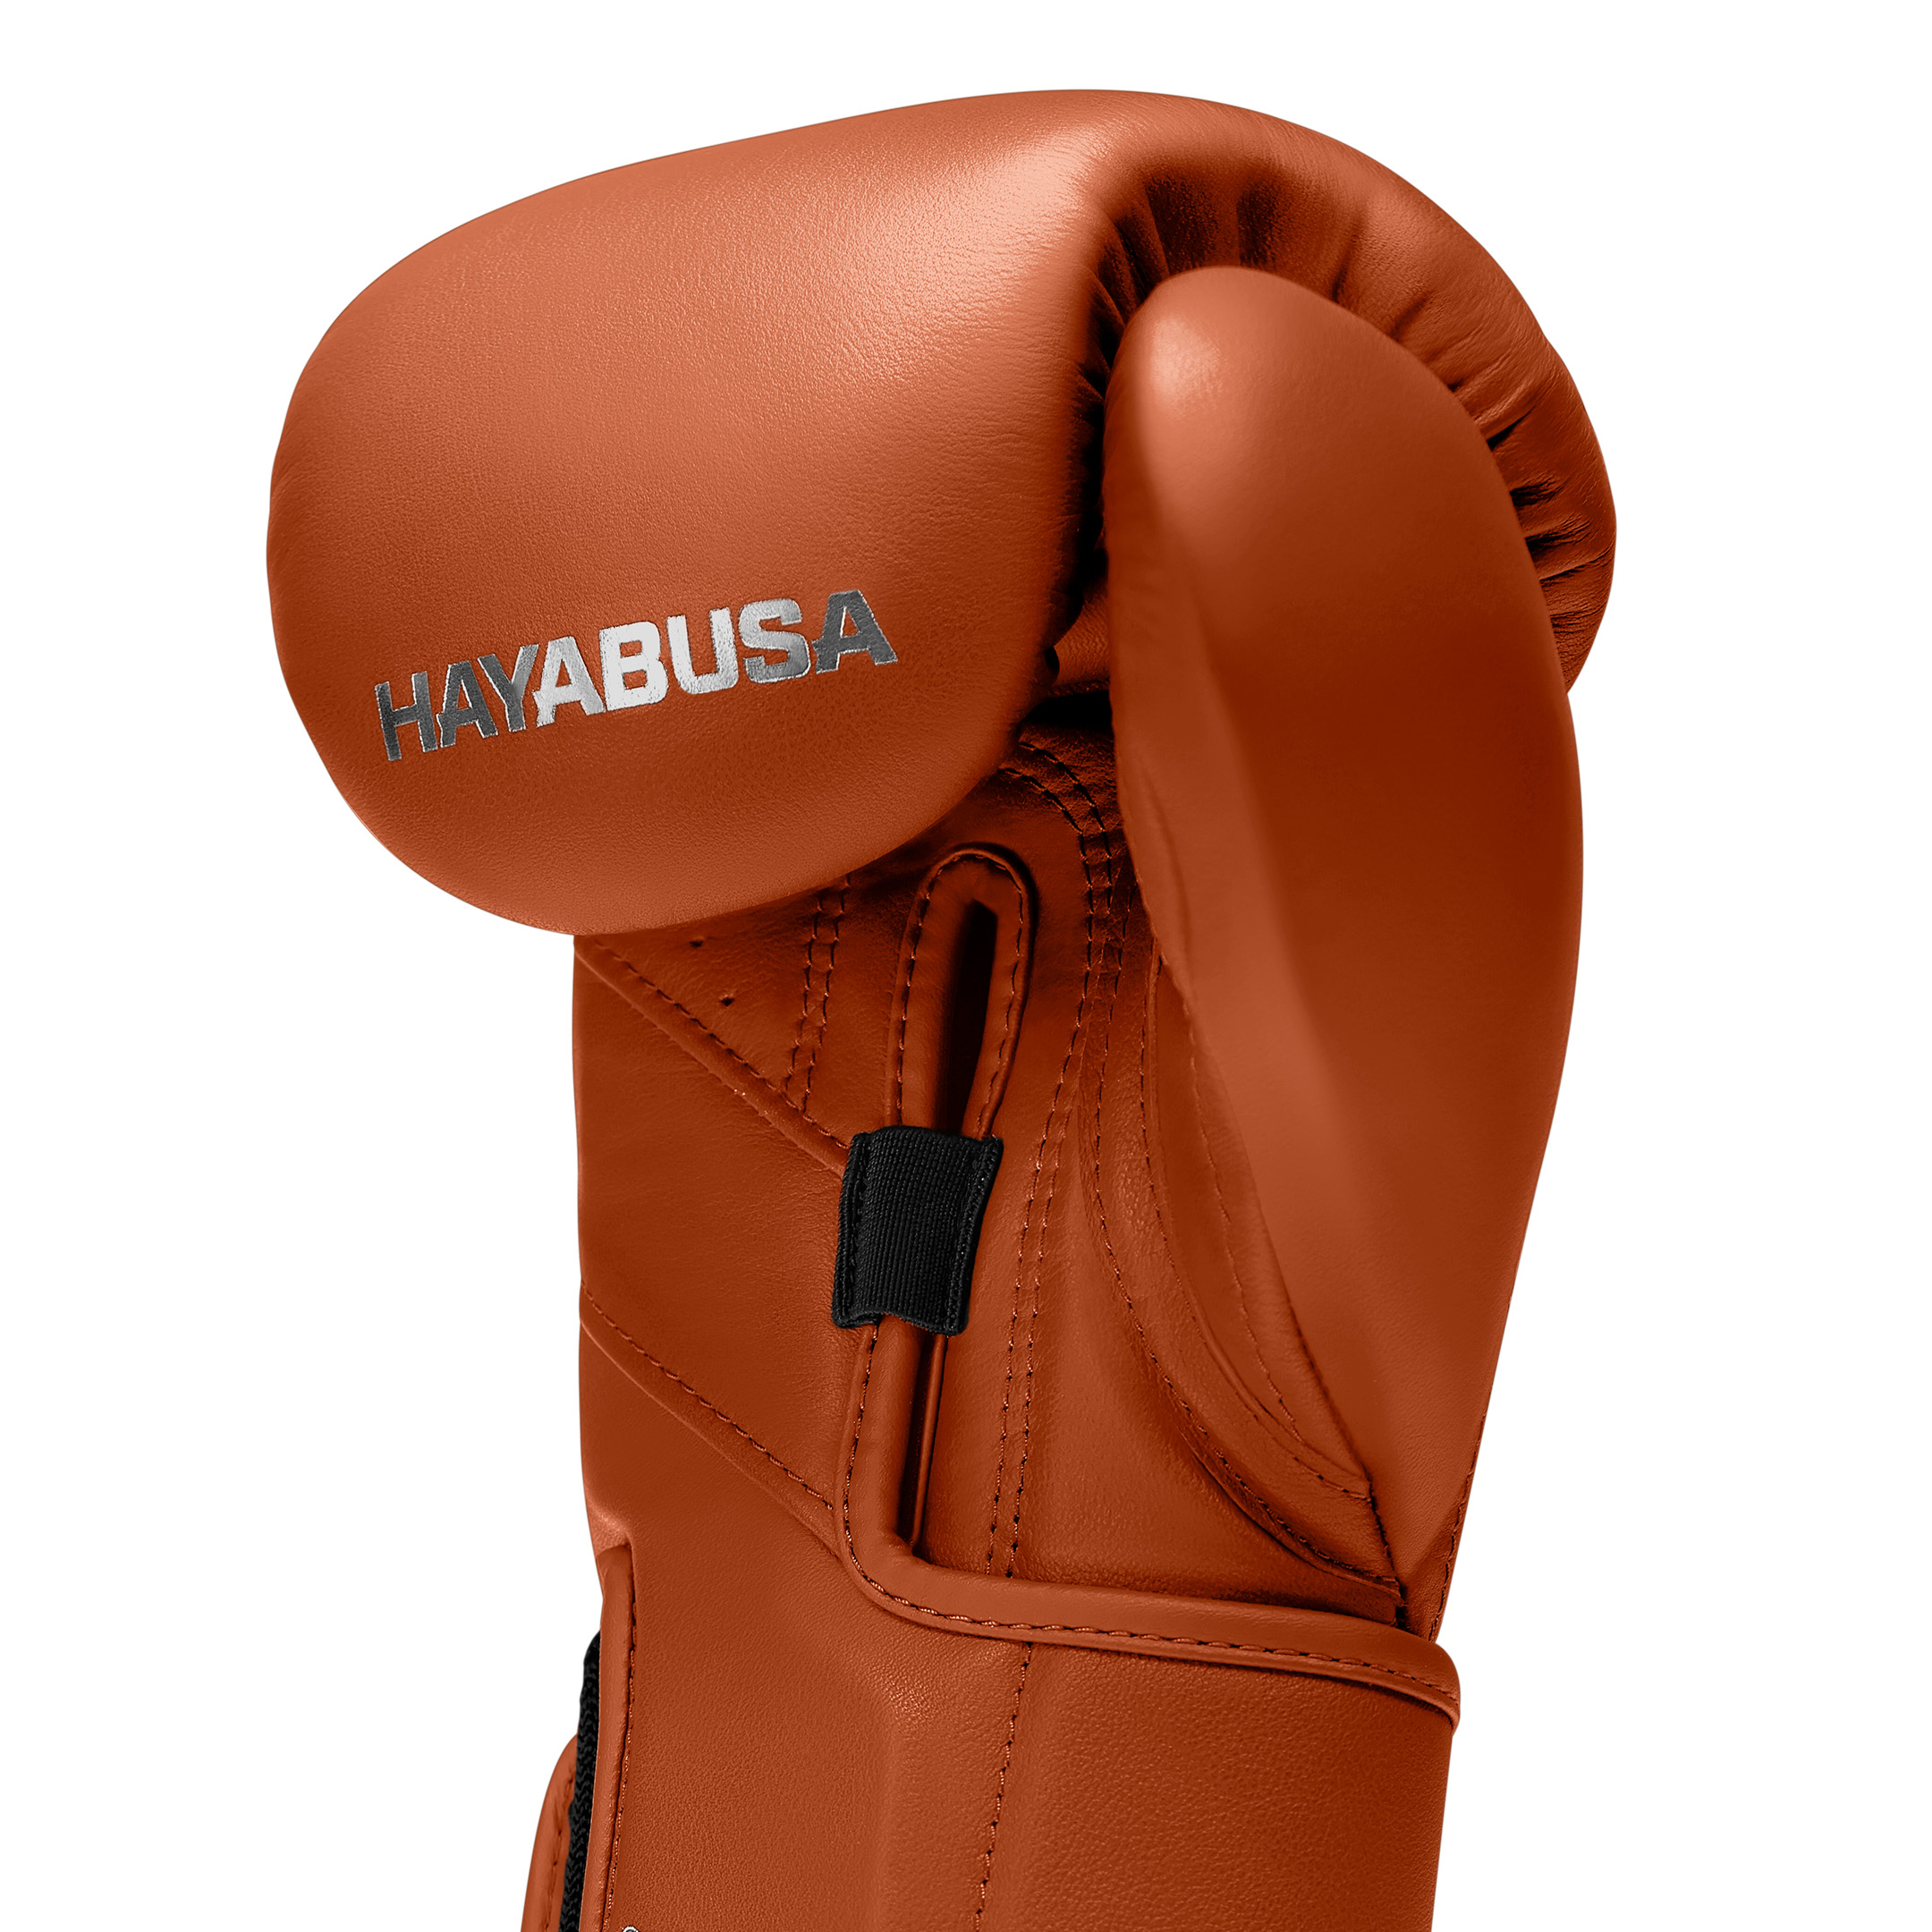 Hayabusa T3 Kanpeki Leather Boxing Gloves | Smooth Leather Finish